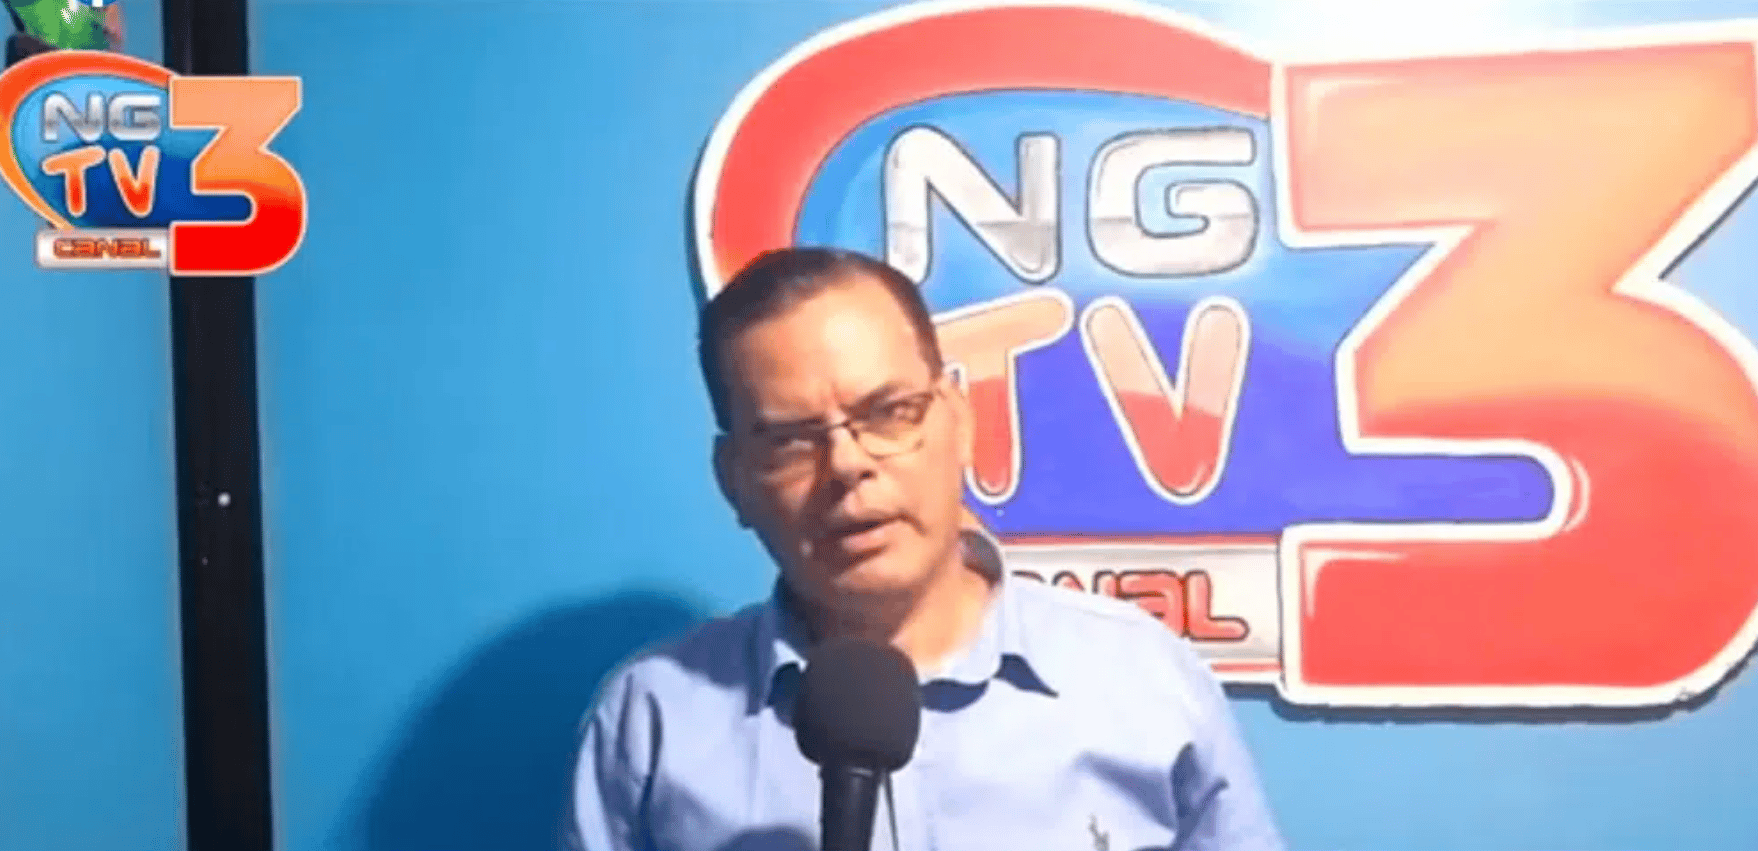 Gobierno de Daniel Ortega cierra 14 radioemisoras y televisoras en primeros días de agosto